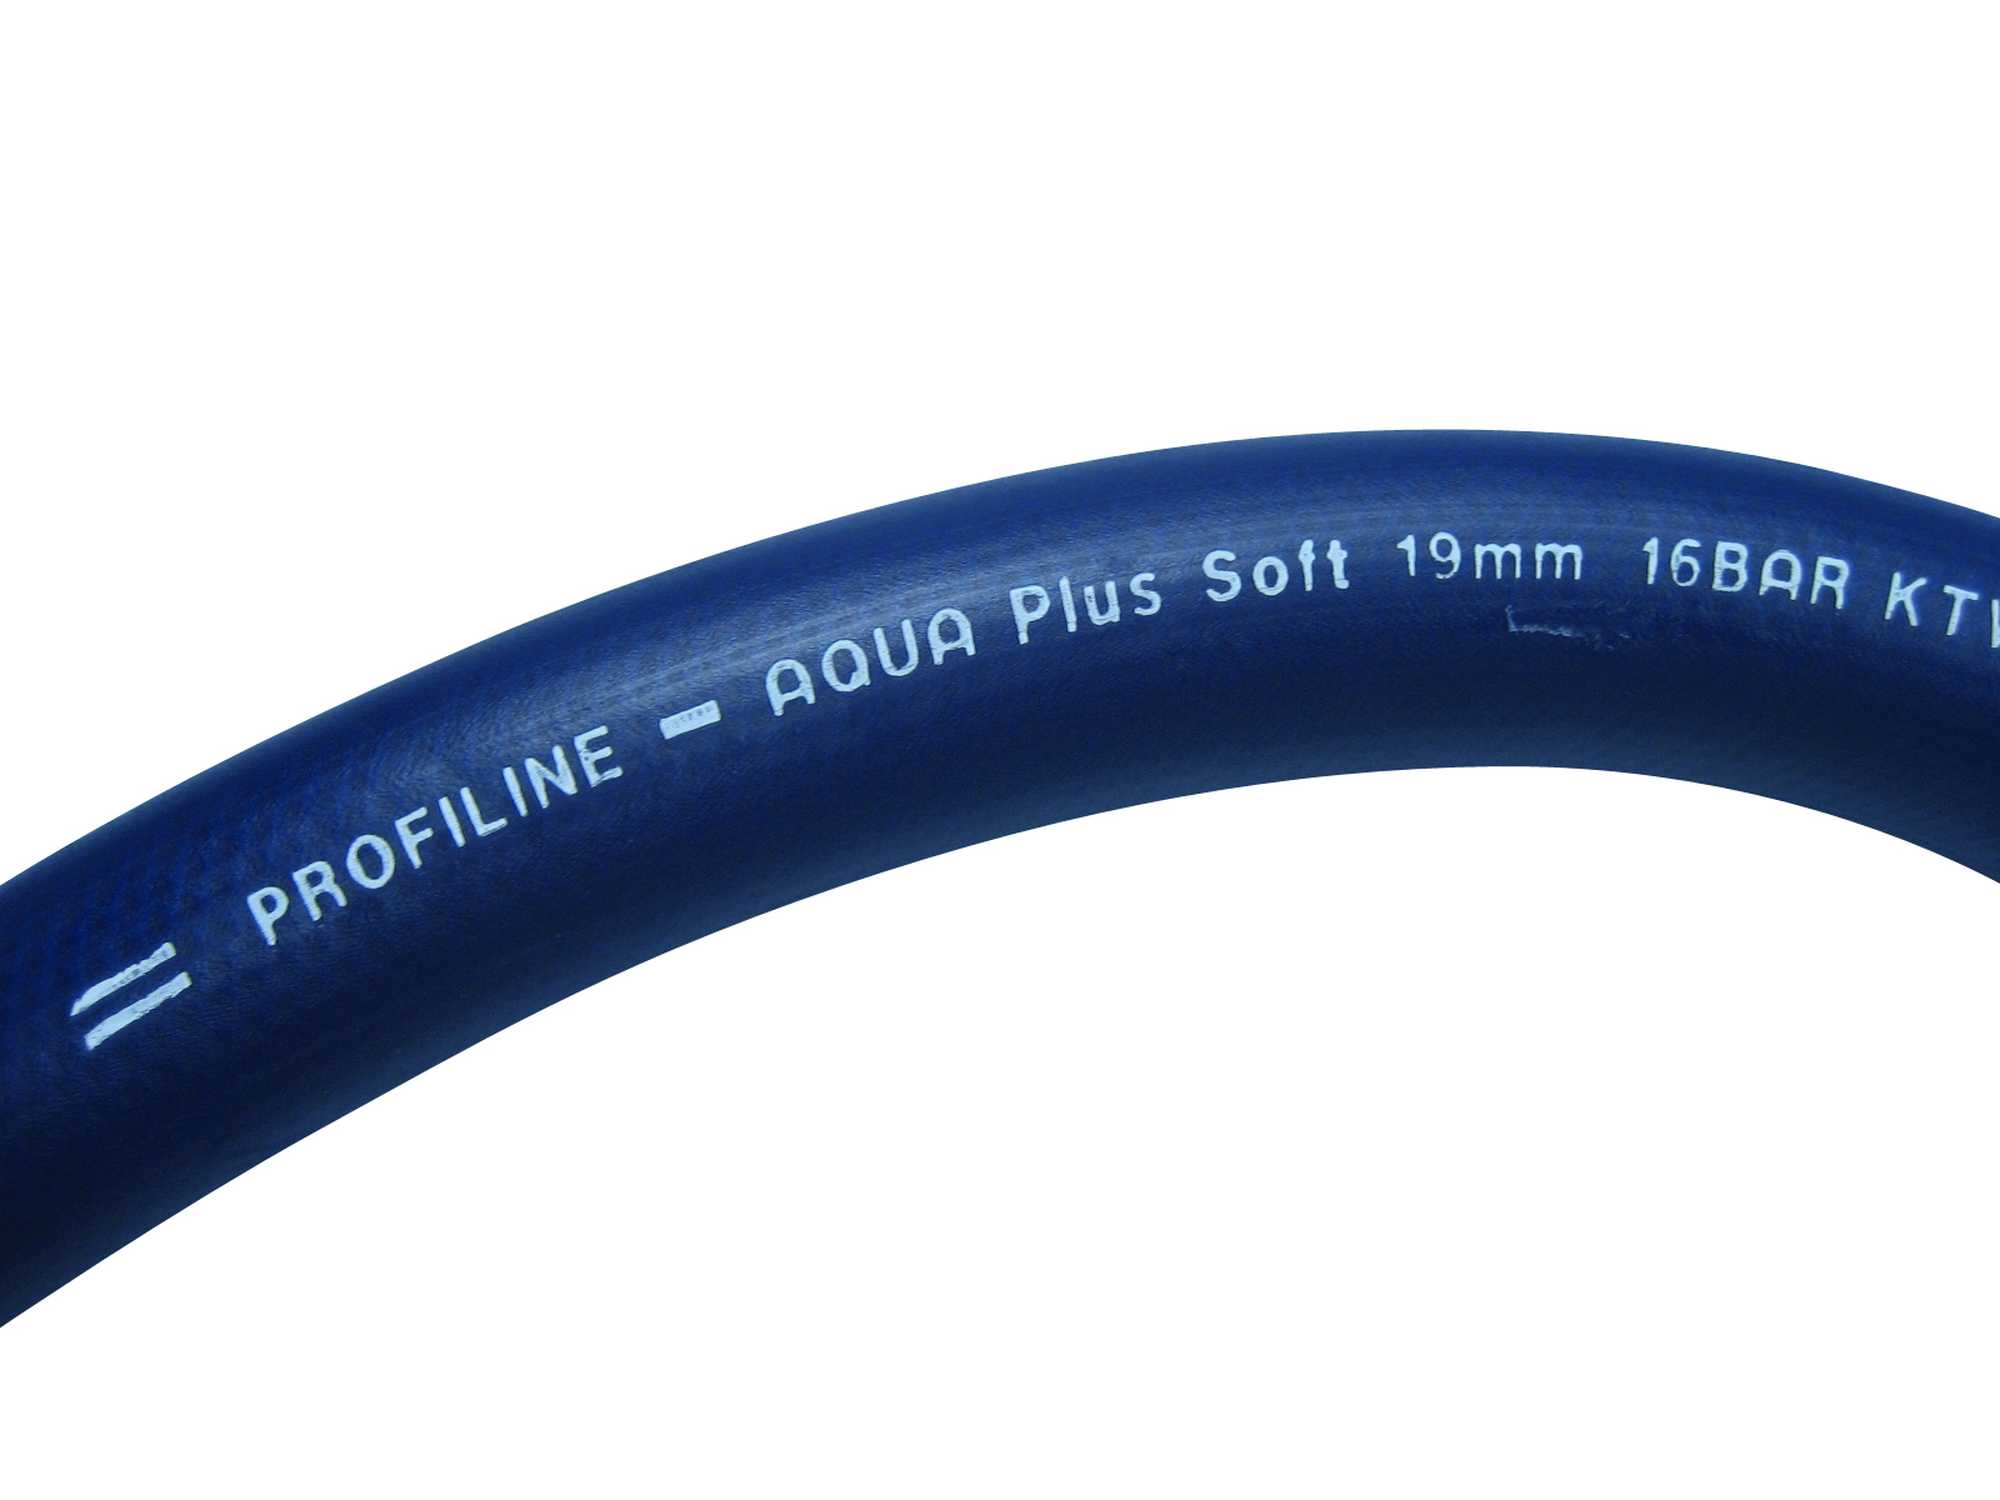 Profiline-Aqua Plus Soft 25mm (1") als Meterware, 5m - 50m Länge, Trinkwasserschlauch nach KTW-A, W270 